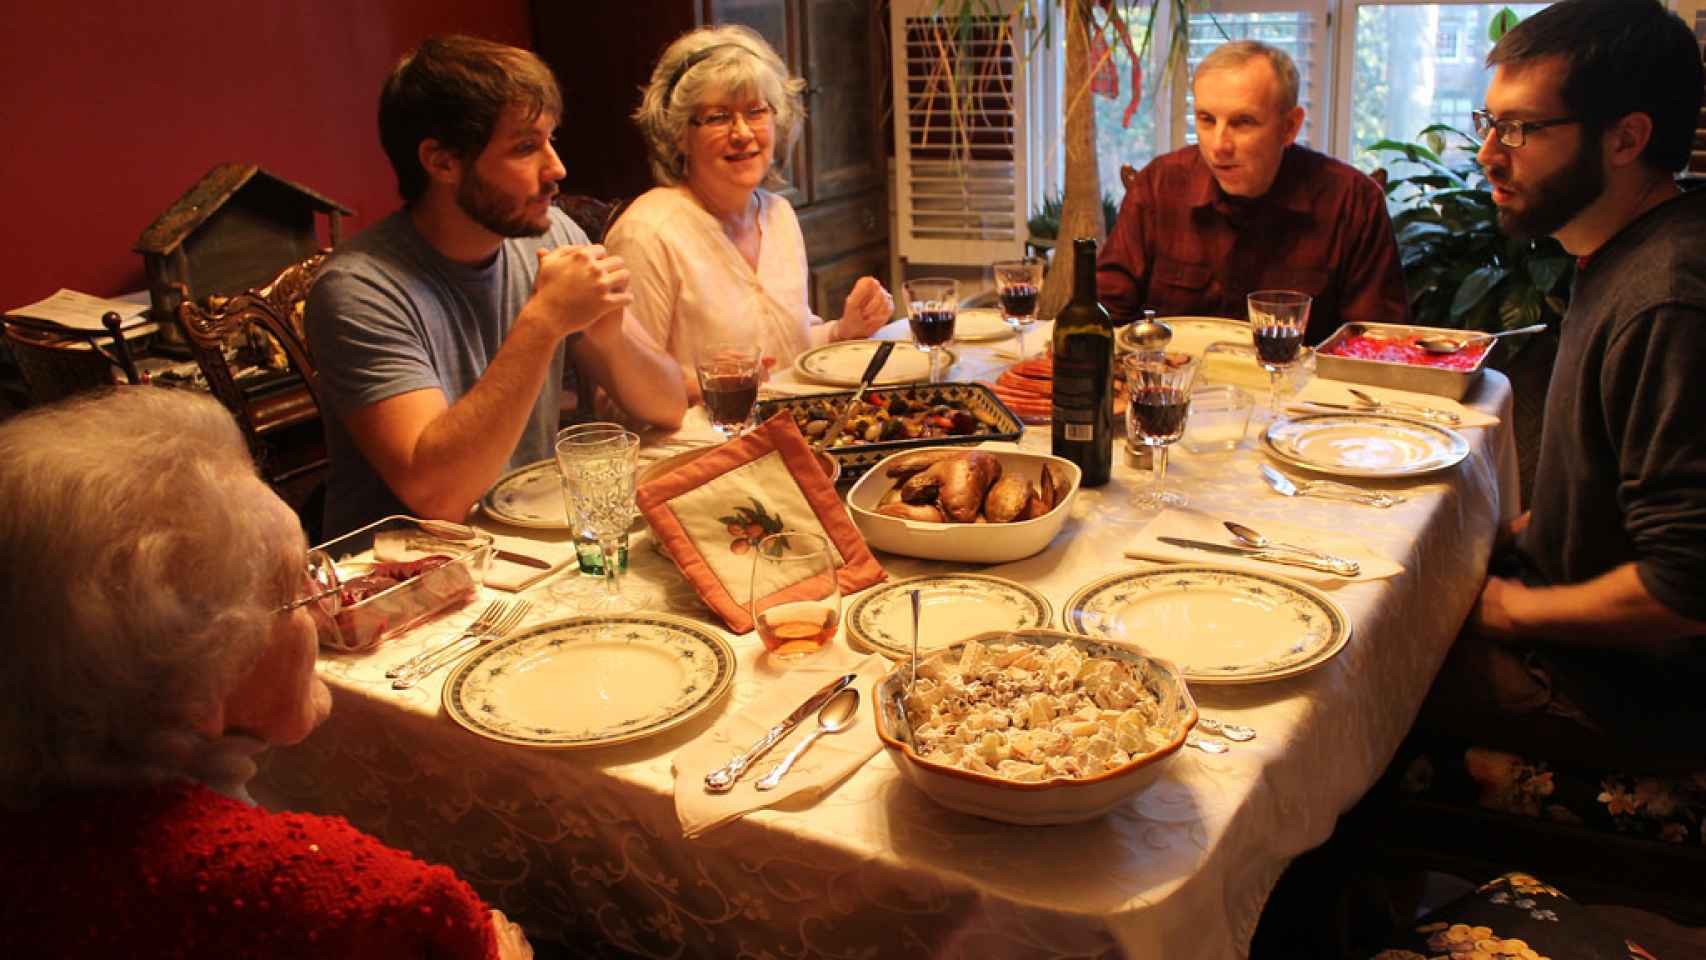 Una familia pasa una cena de Nochebuena en paz y armonía.